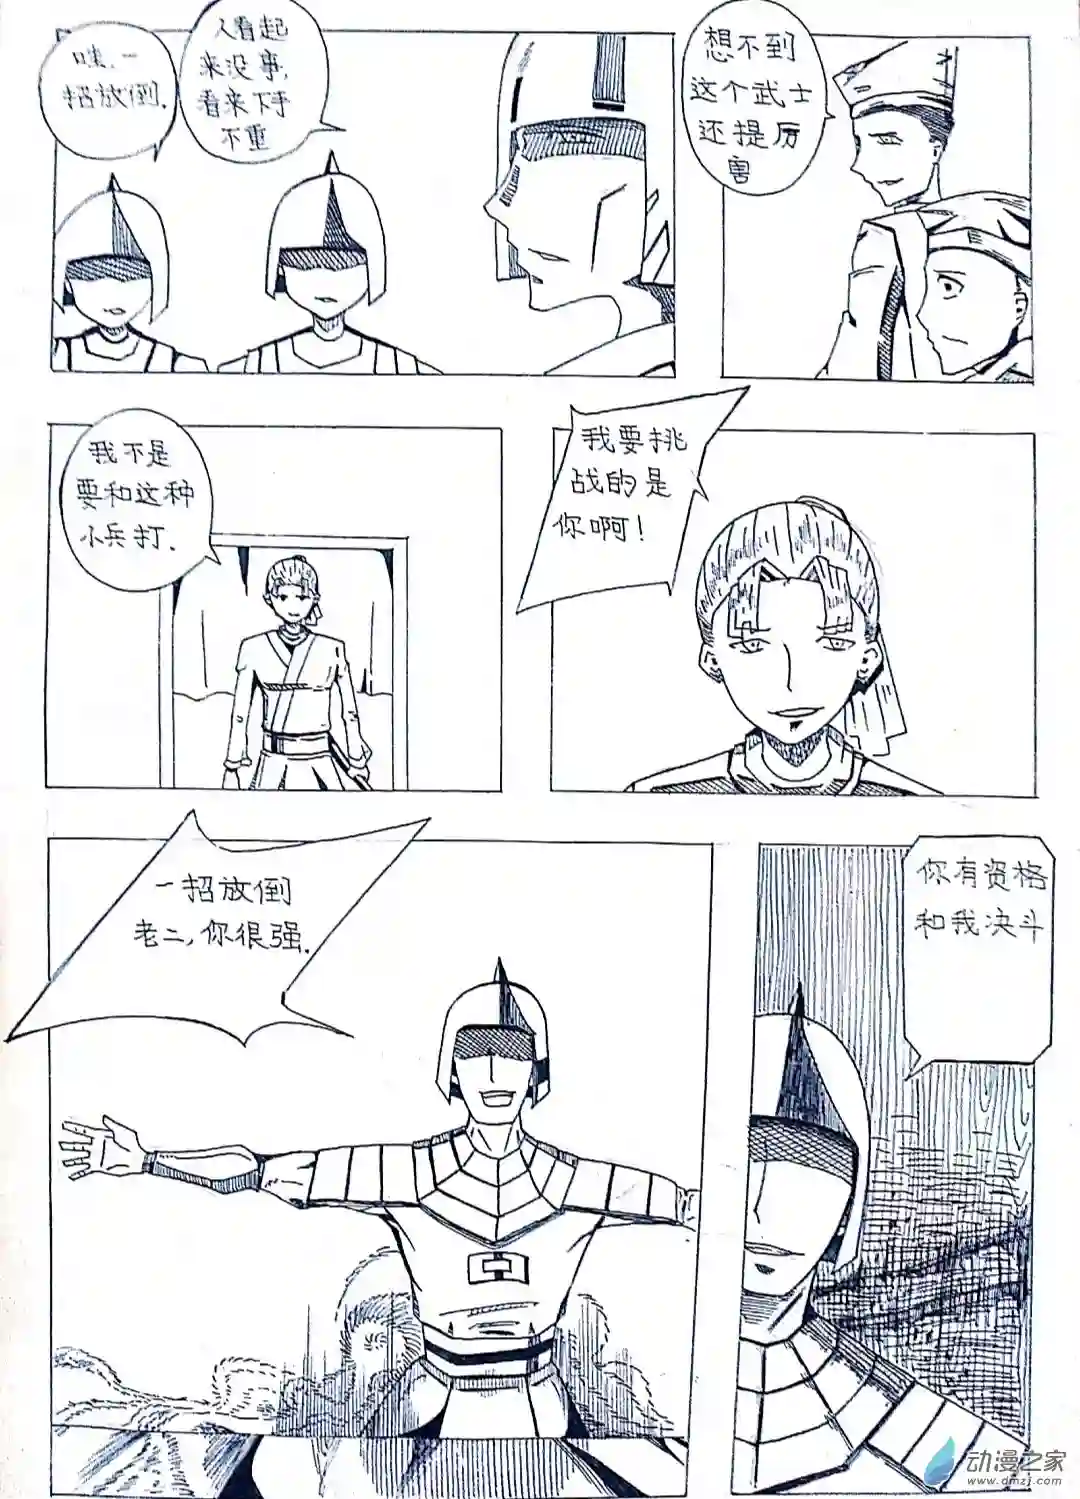 日刊漫画21 剑客的故事